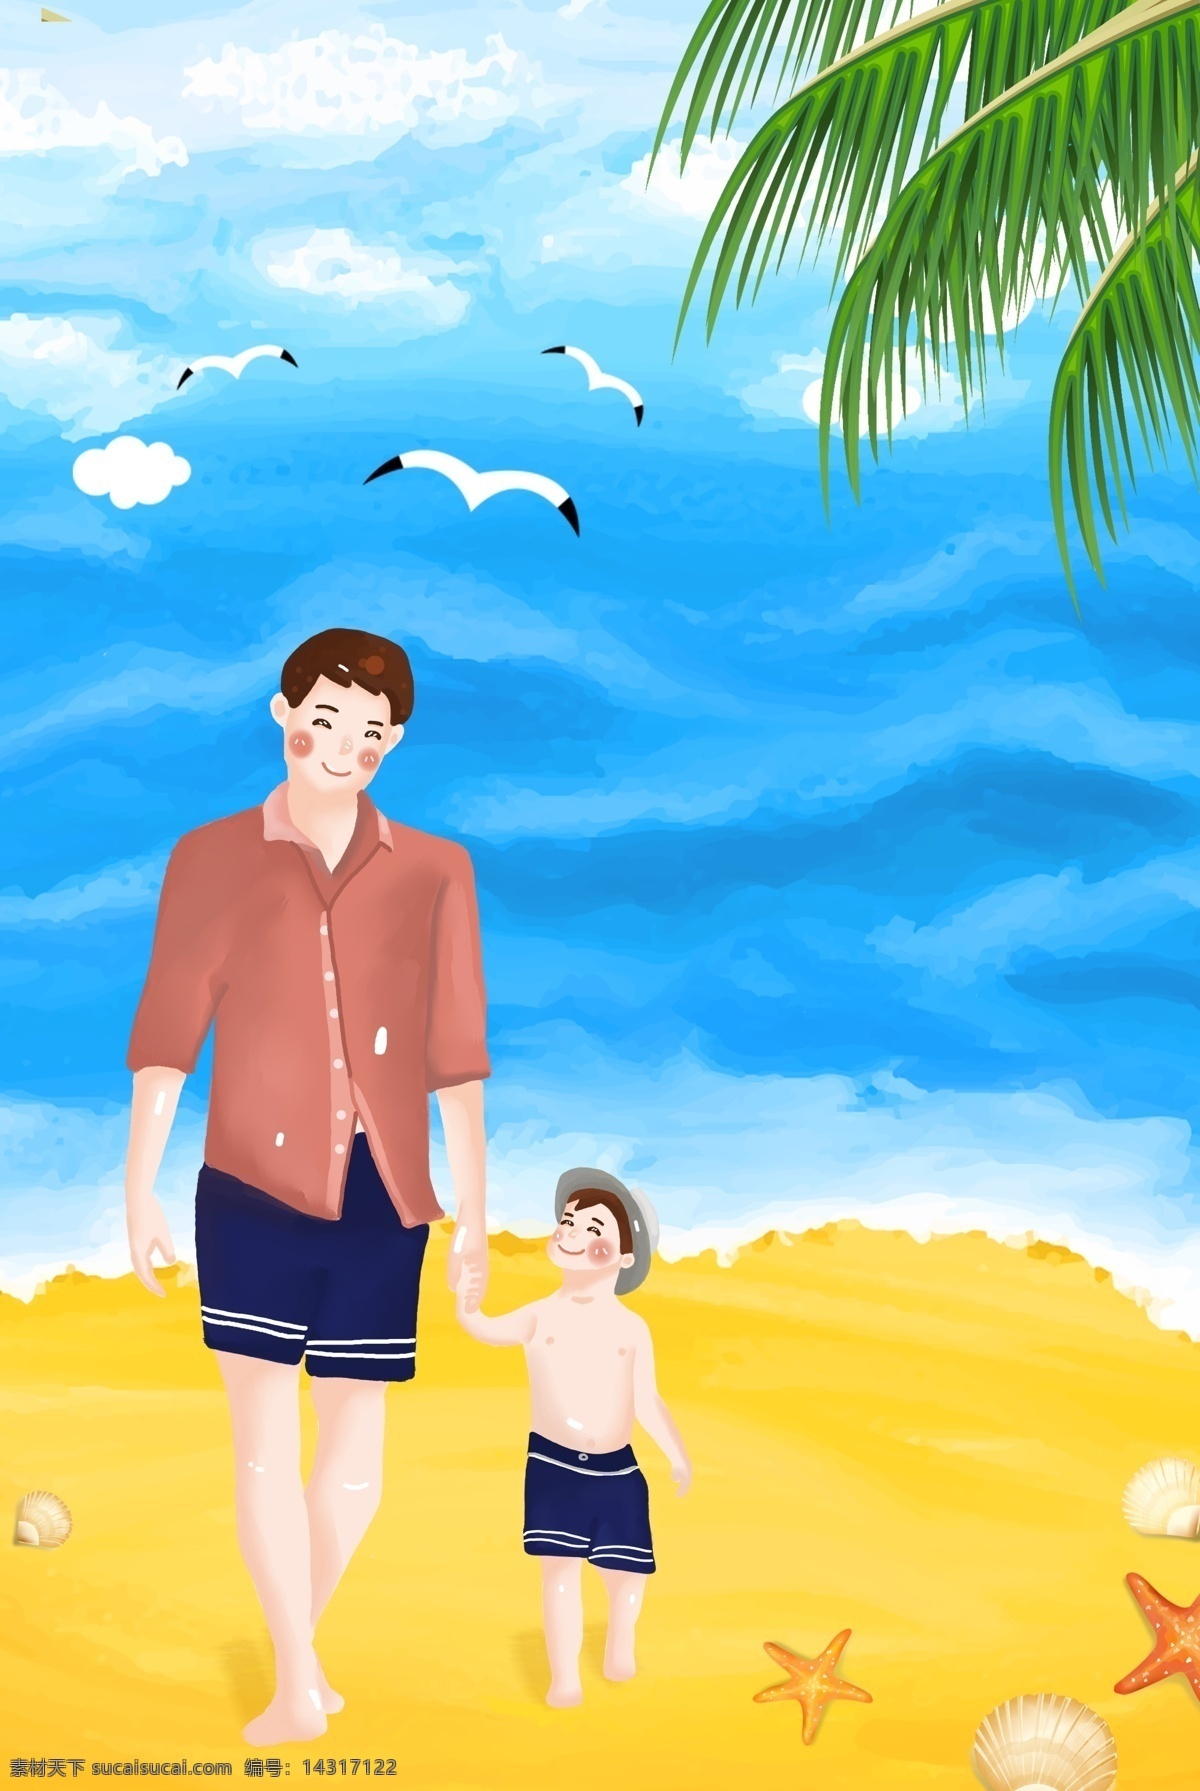 父亲节 手绘 父子 海滩 散步 背景 父子海滩散步 海报背景 海鸥 椰树 大海